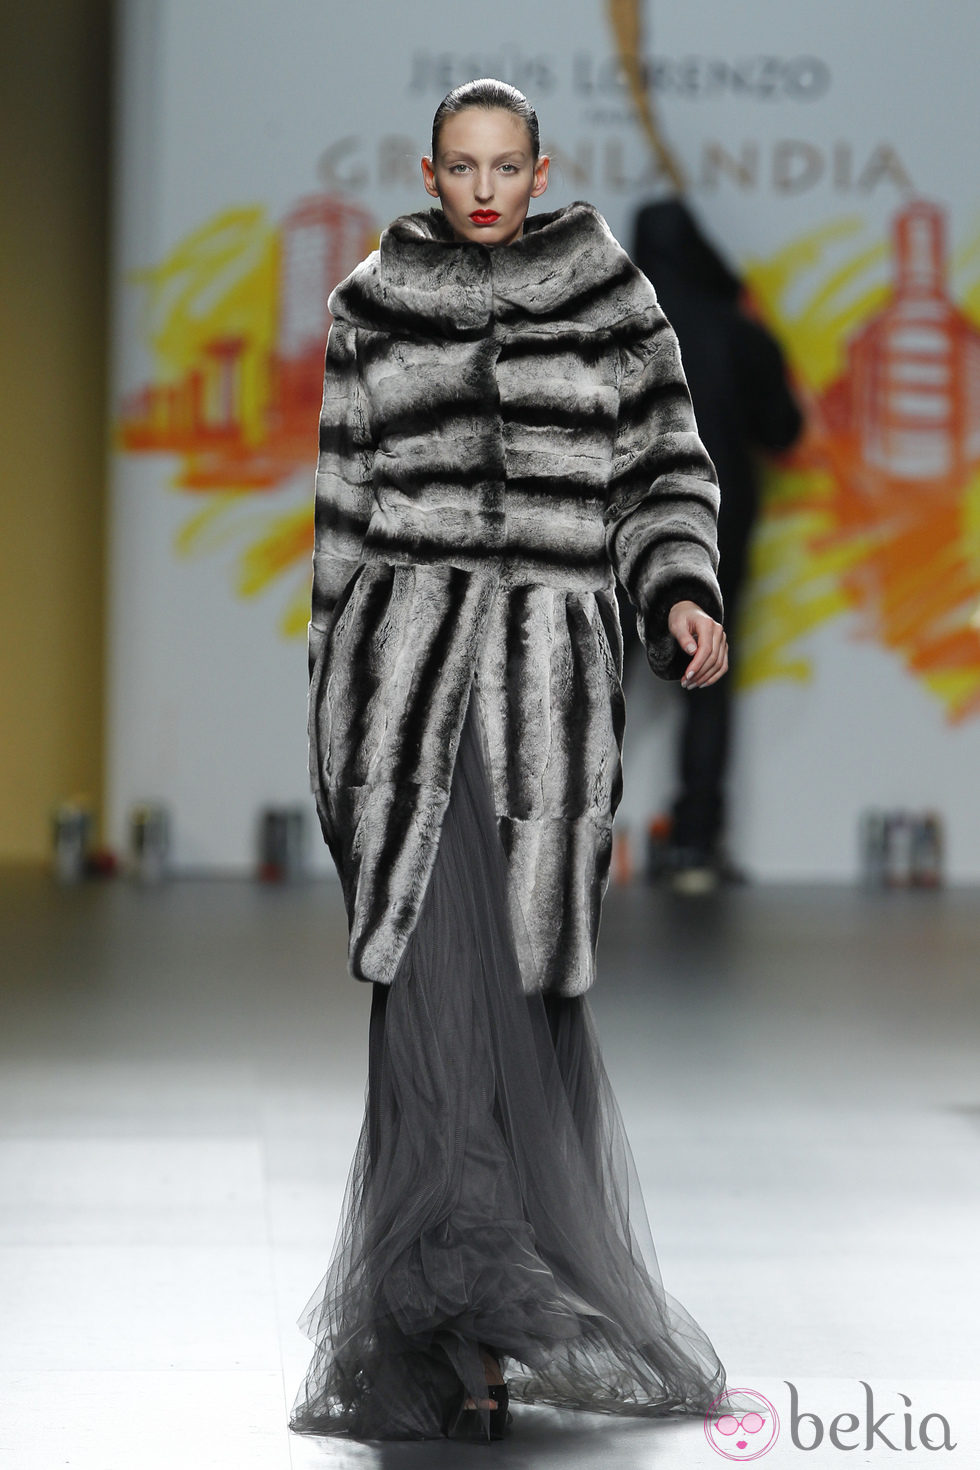 Abrigo en tonos grises de la colección otoño/invierno 2012/2013 de Jesús Lorenzo